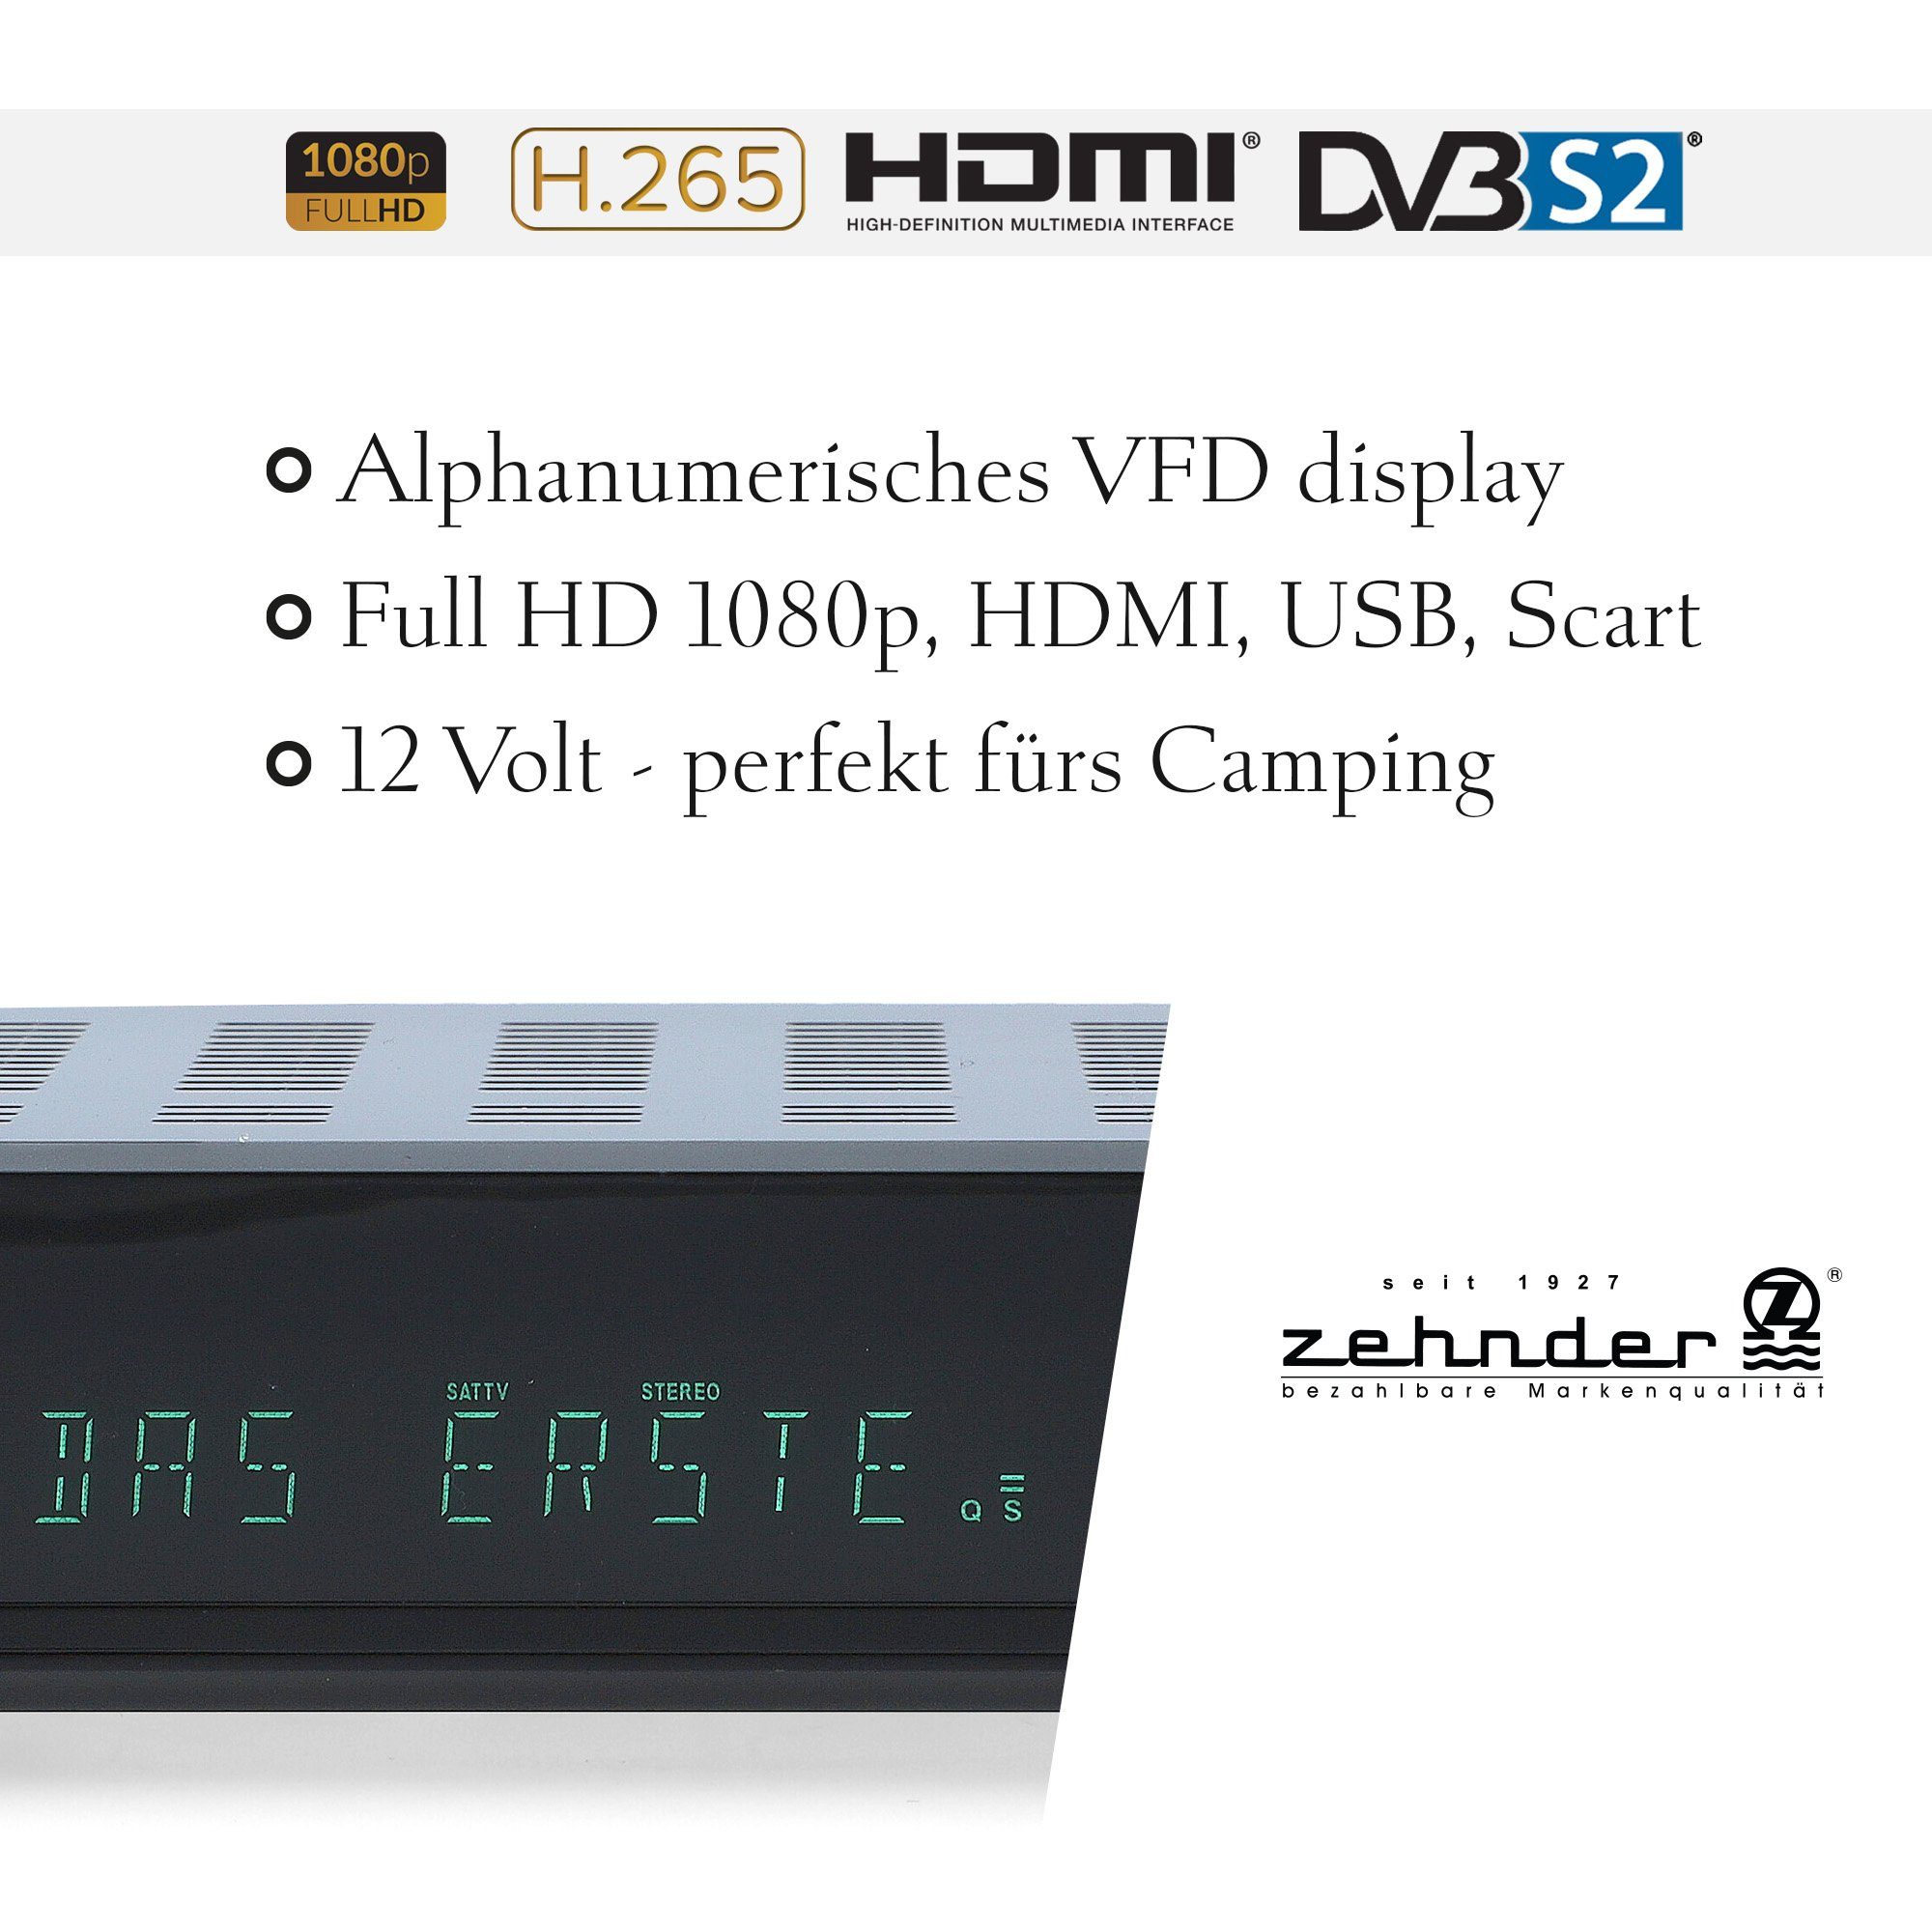 Zehnder HX-2300-Alphanumerisches Display tauglich) USB, (AAC-LC, SCART, HDMI, - Einkabel Coaxial, 12V SAT-Receiver PVR